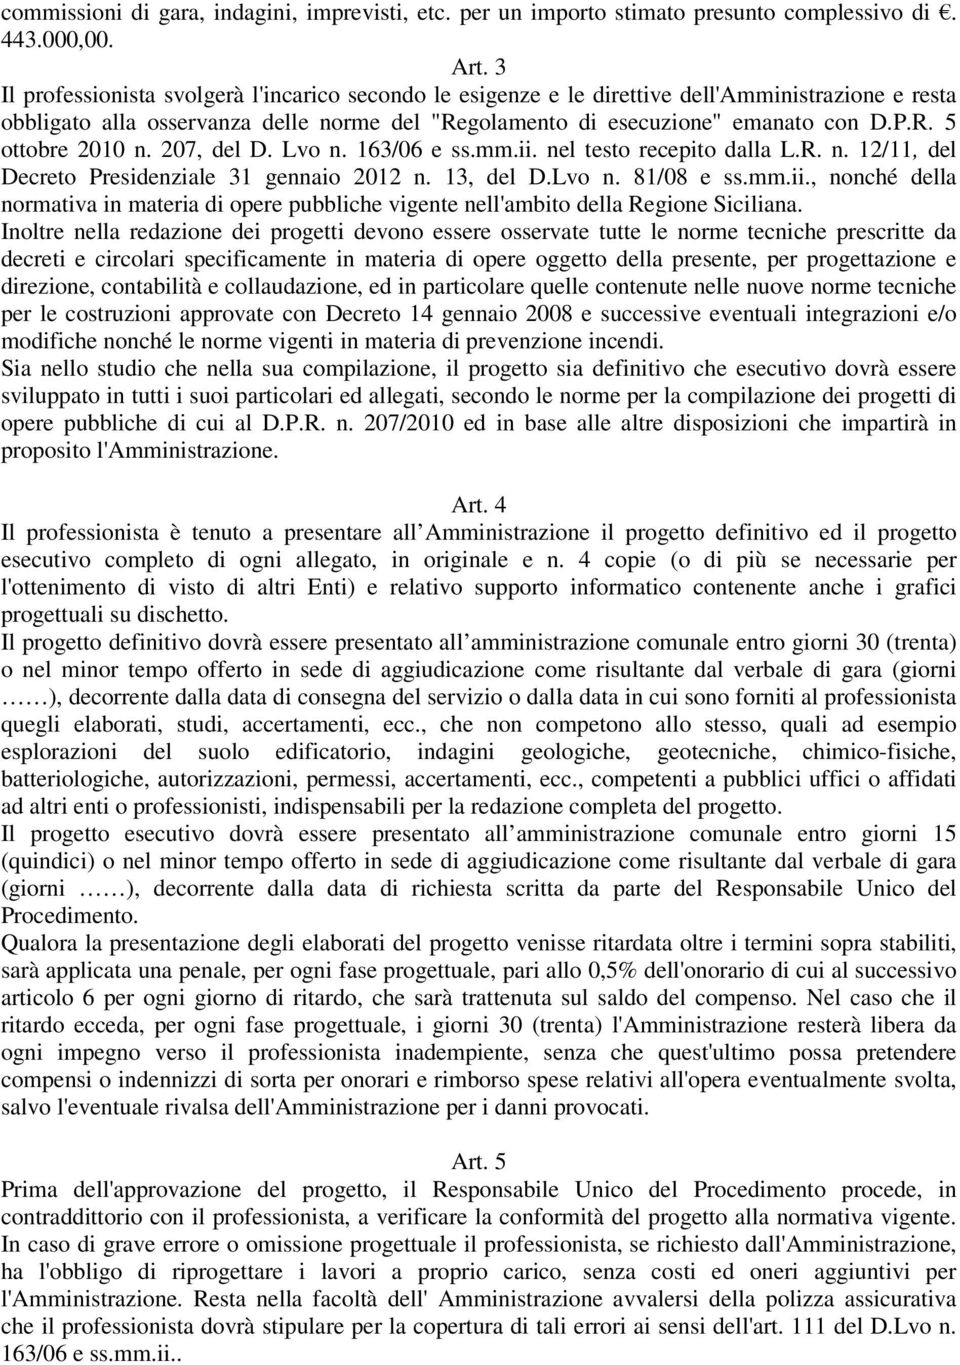 207, del D. Lvo n. 163/06 e ss.mm.ii. nel testo recepito dalla L.R. n. 12/11, del Decreto Presidenziale 31 gennaio 2012 n. 13, del D.Lvo n. 81/08 e ss.mm.ii., nonché della normativa in materia di opere pubbliche vigente nell'ambito della Regione Siciliana.